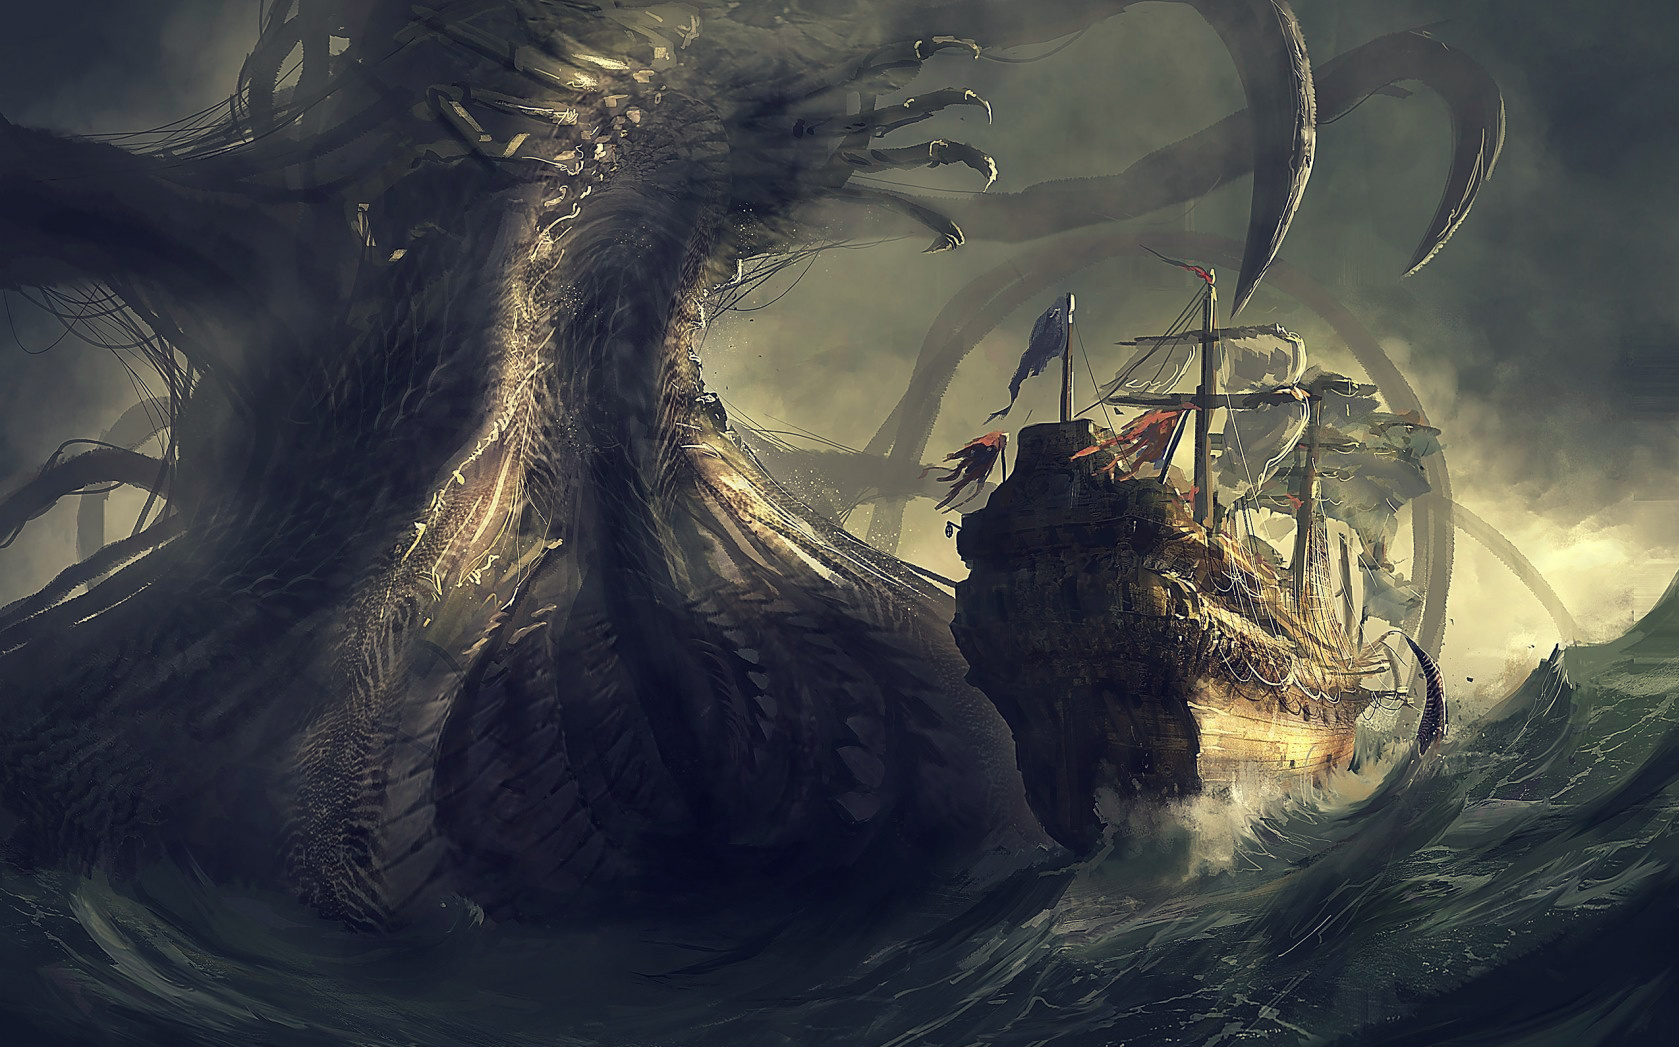 Fantasy Sea Monster Wallpaper